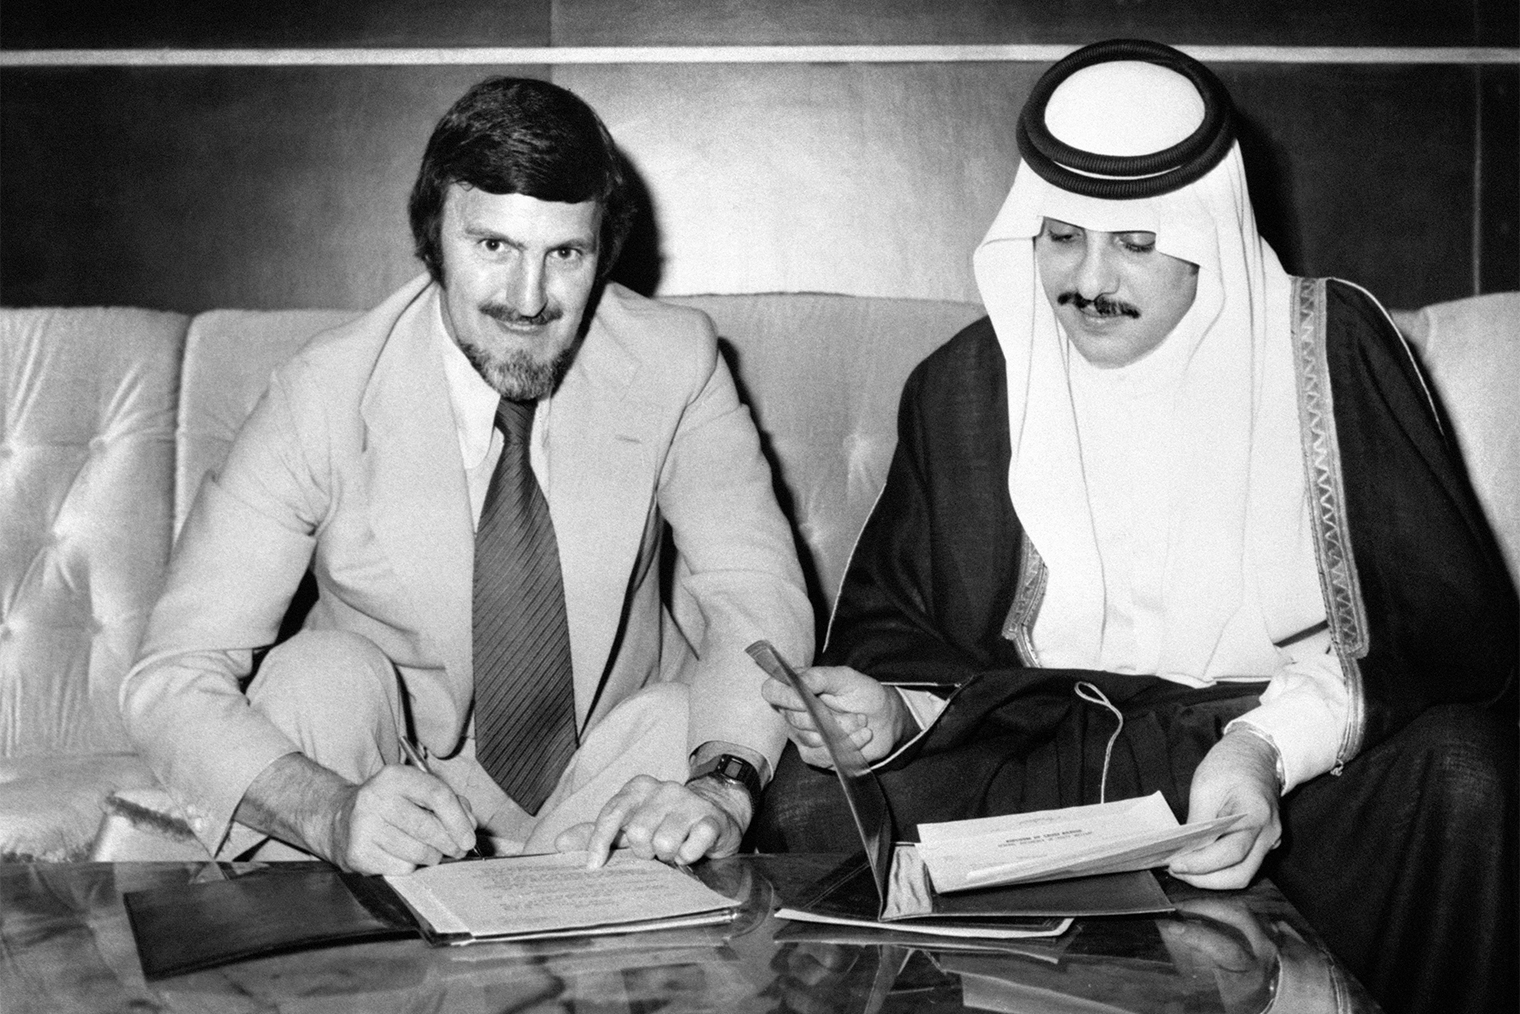 Джимми Хилл — английский футболист и тренер. В 1976 году он стал первым техническим директором Саудовской футбольной федерации и повлиял на дальнейшее развитие спорта в стране. Источник: PA Images / Getty Images